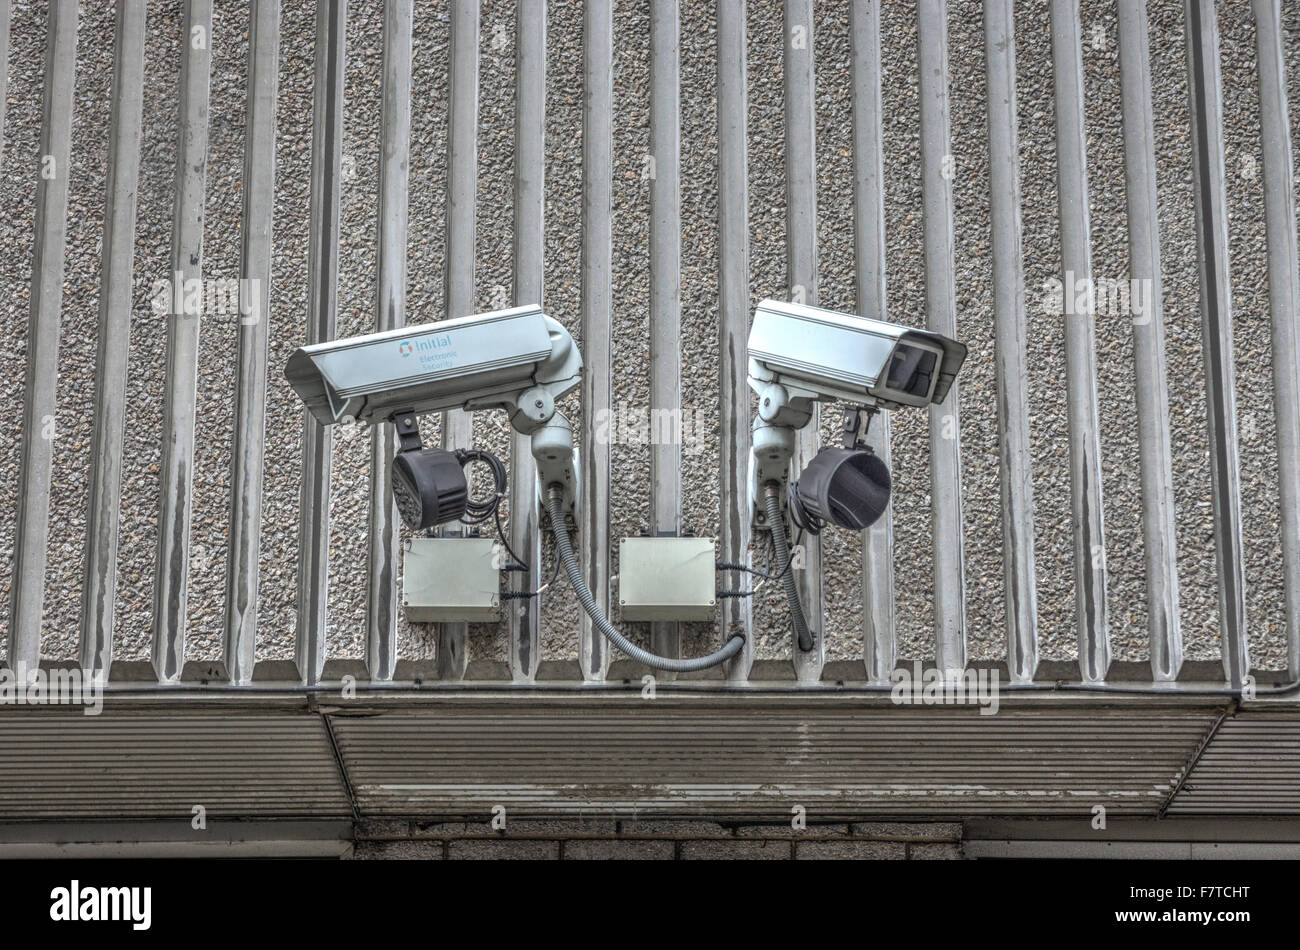 Des caméras de sécurité. Les caméras de vidéosurveillance. Plat de sécurité Caméras de surveillance Banque D'Images